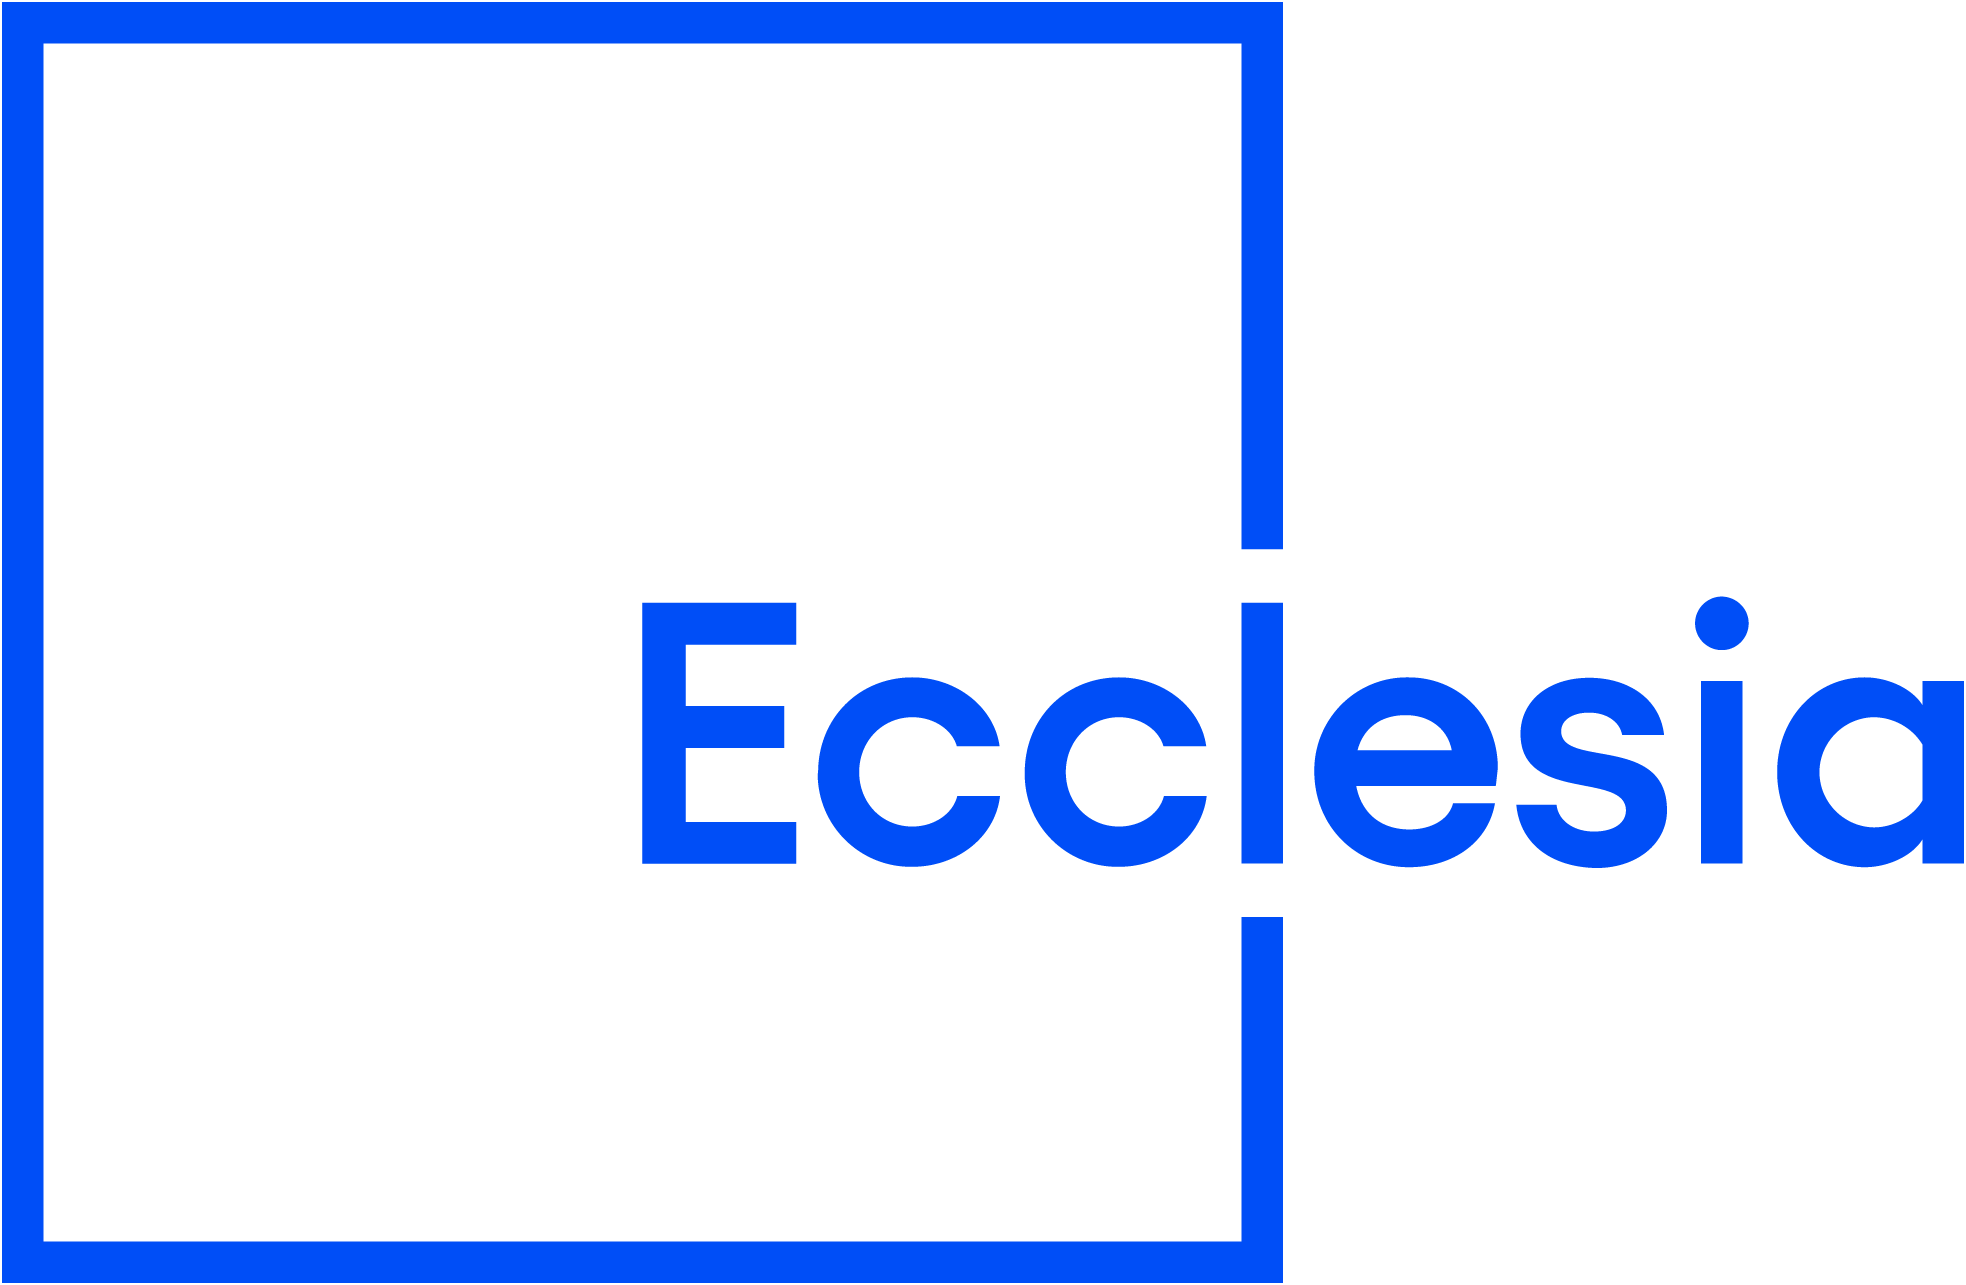 Ecclesia-logo_WIT-RGB